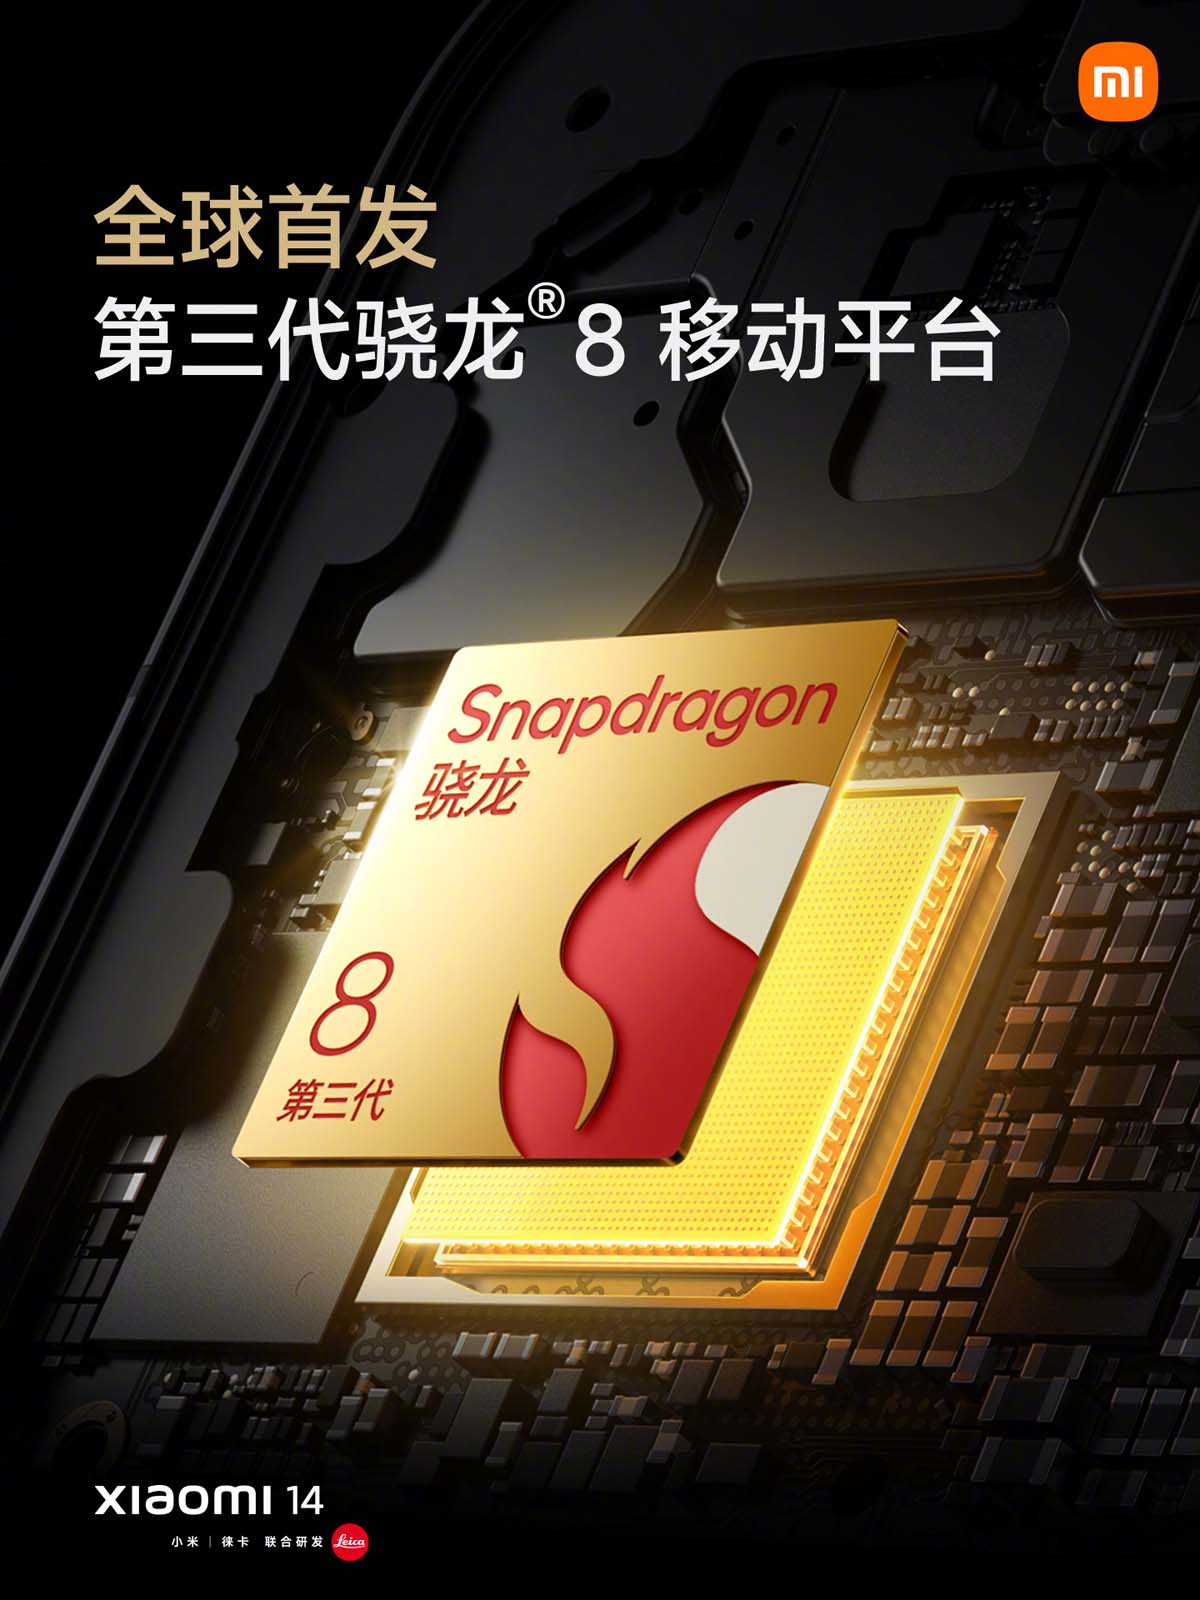 Xaiomi 14 được trang bị Snapdragon 8 Gen 3